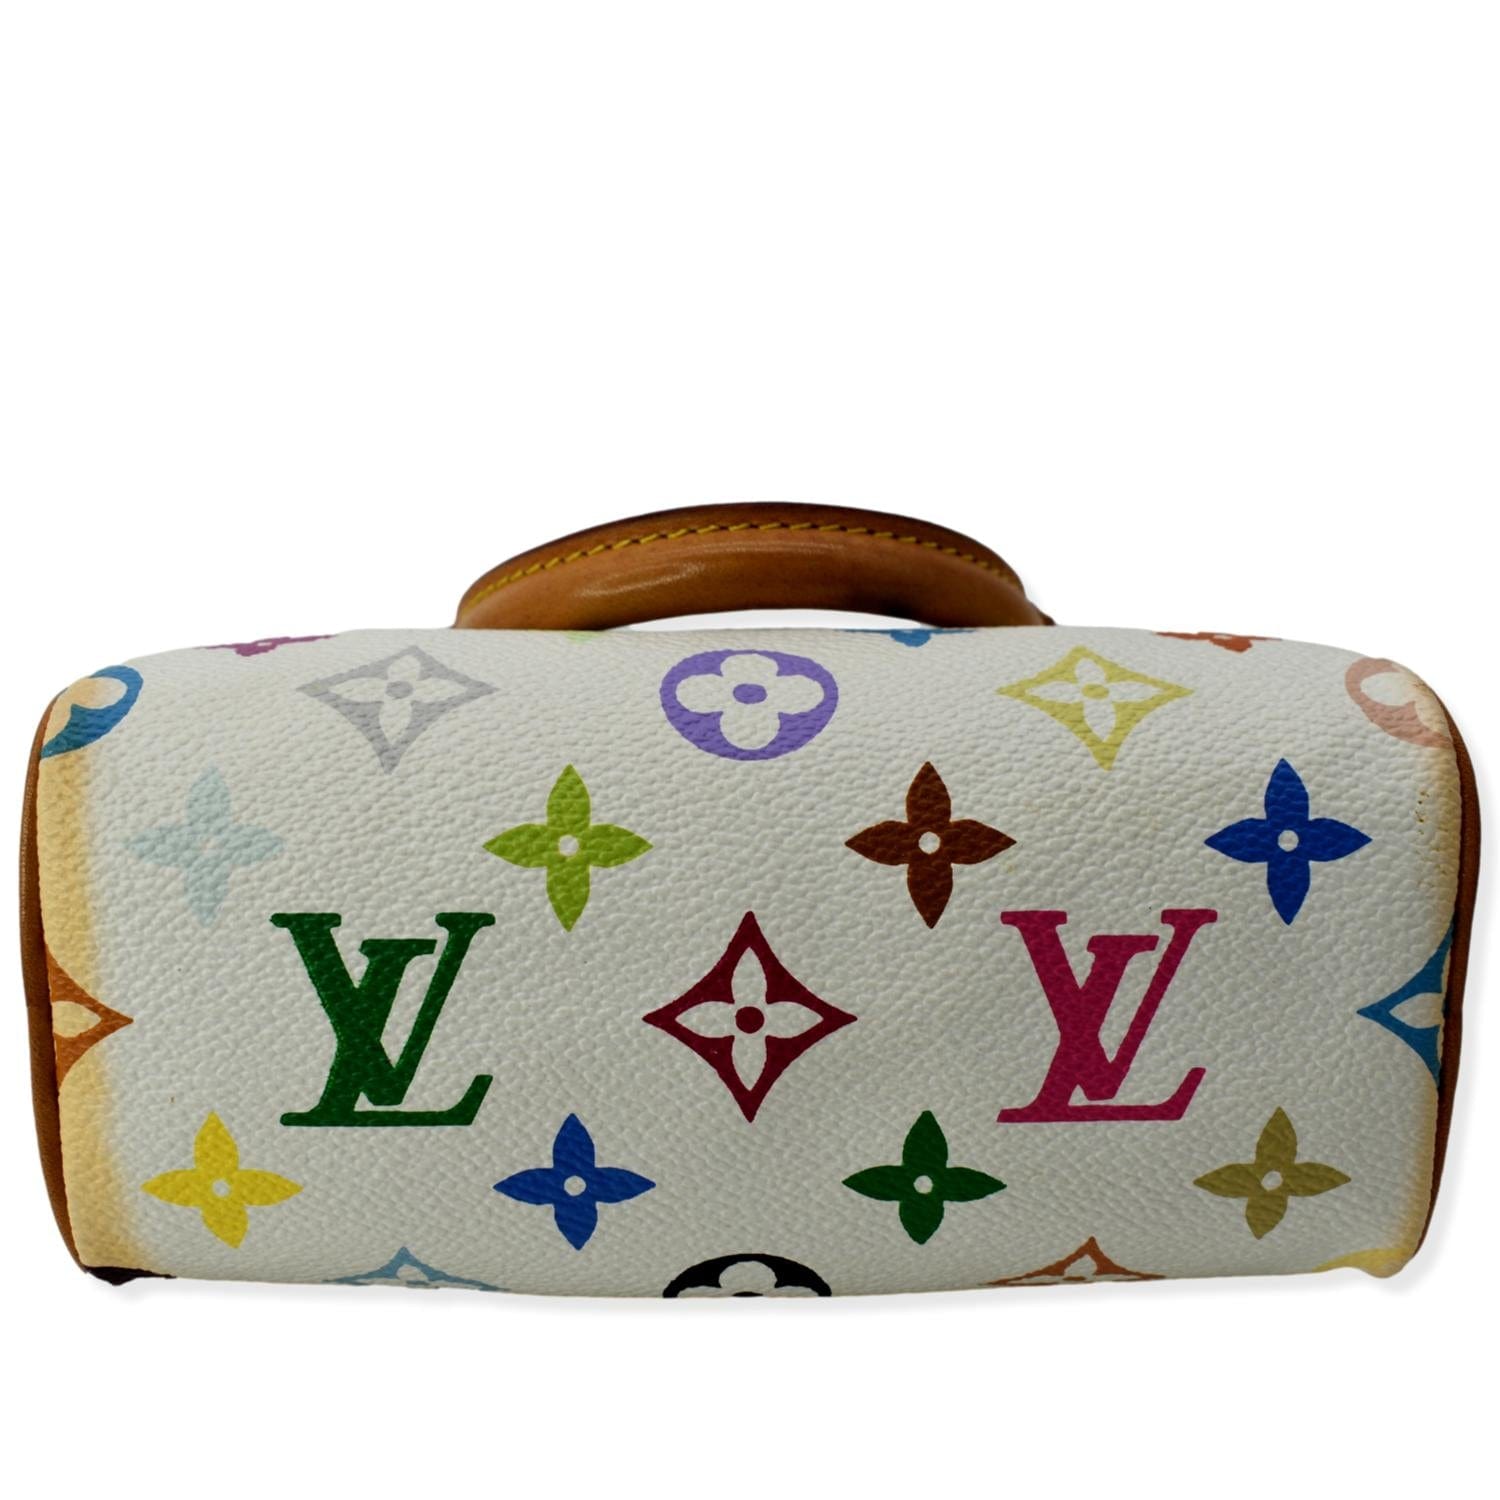 Louis Vuitton - Diane 🧡 #unboxing #unboxwithme #louisvuitton #fyp #lu